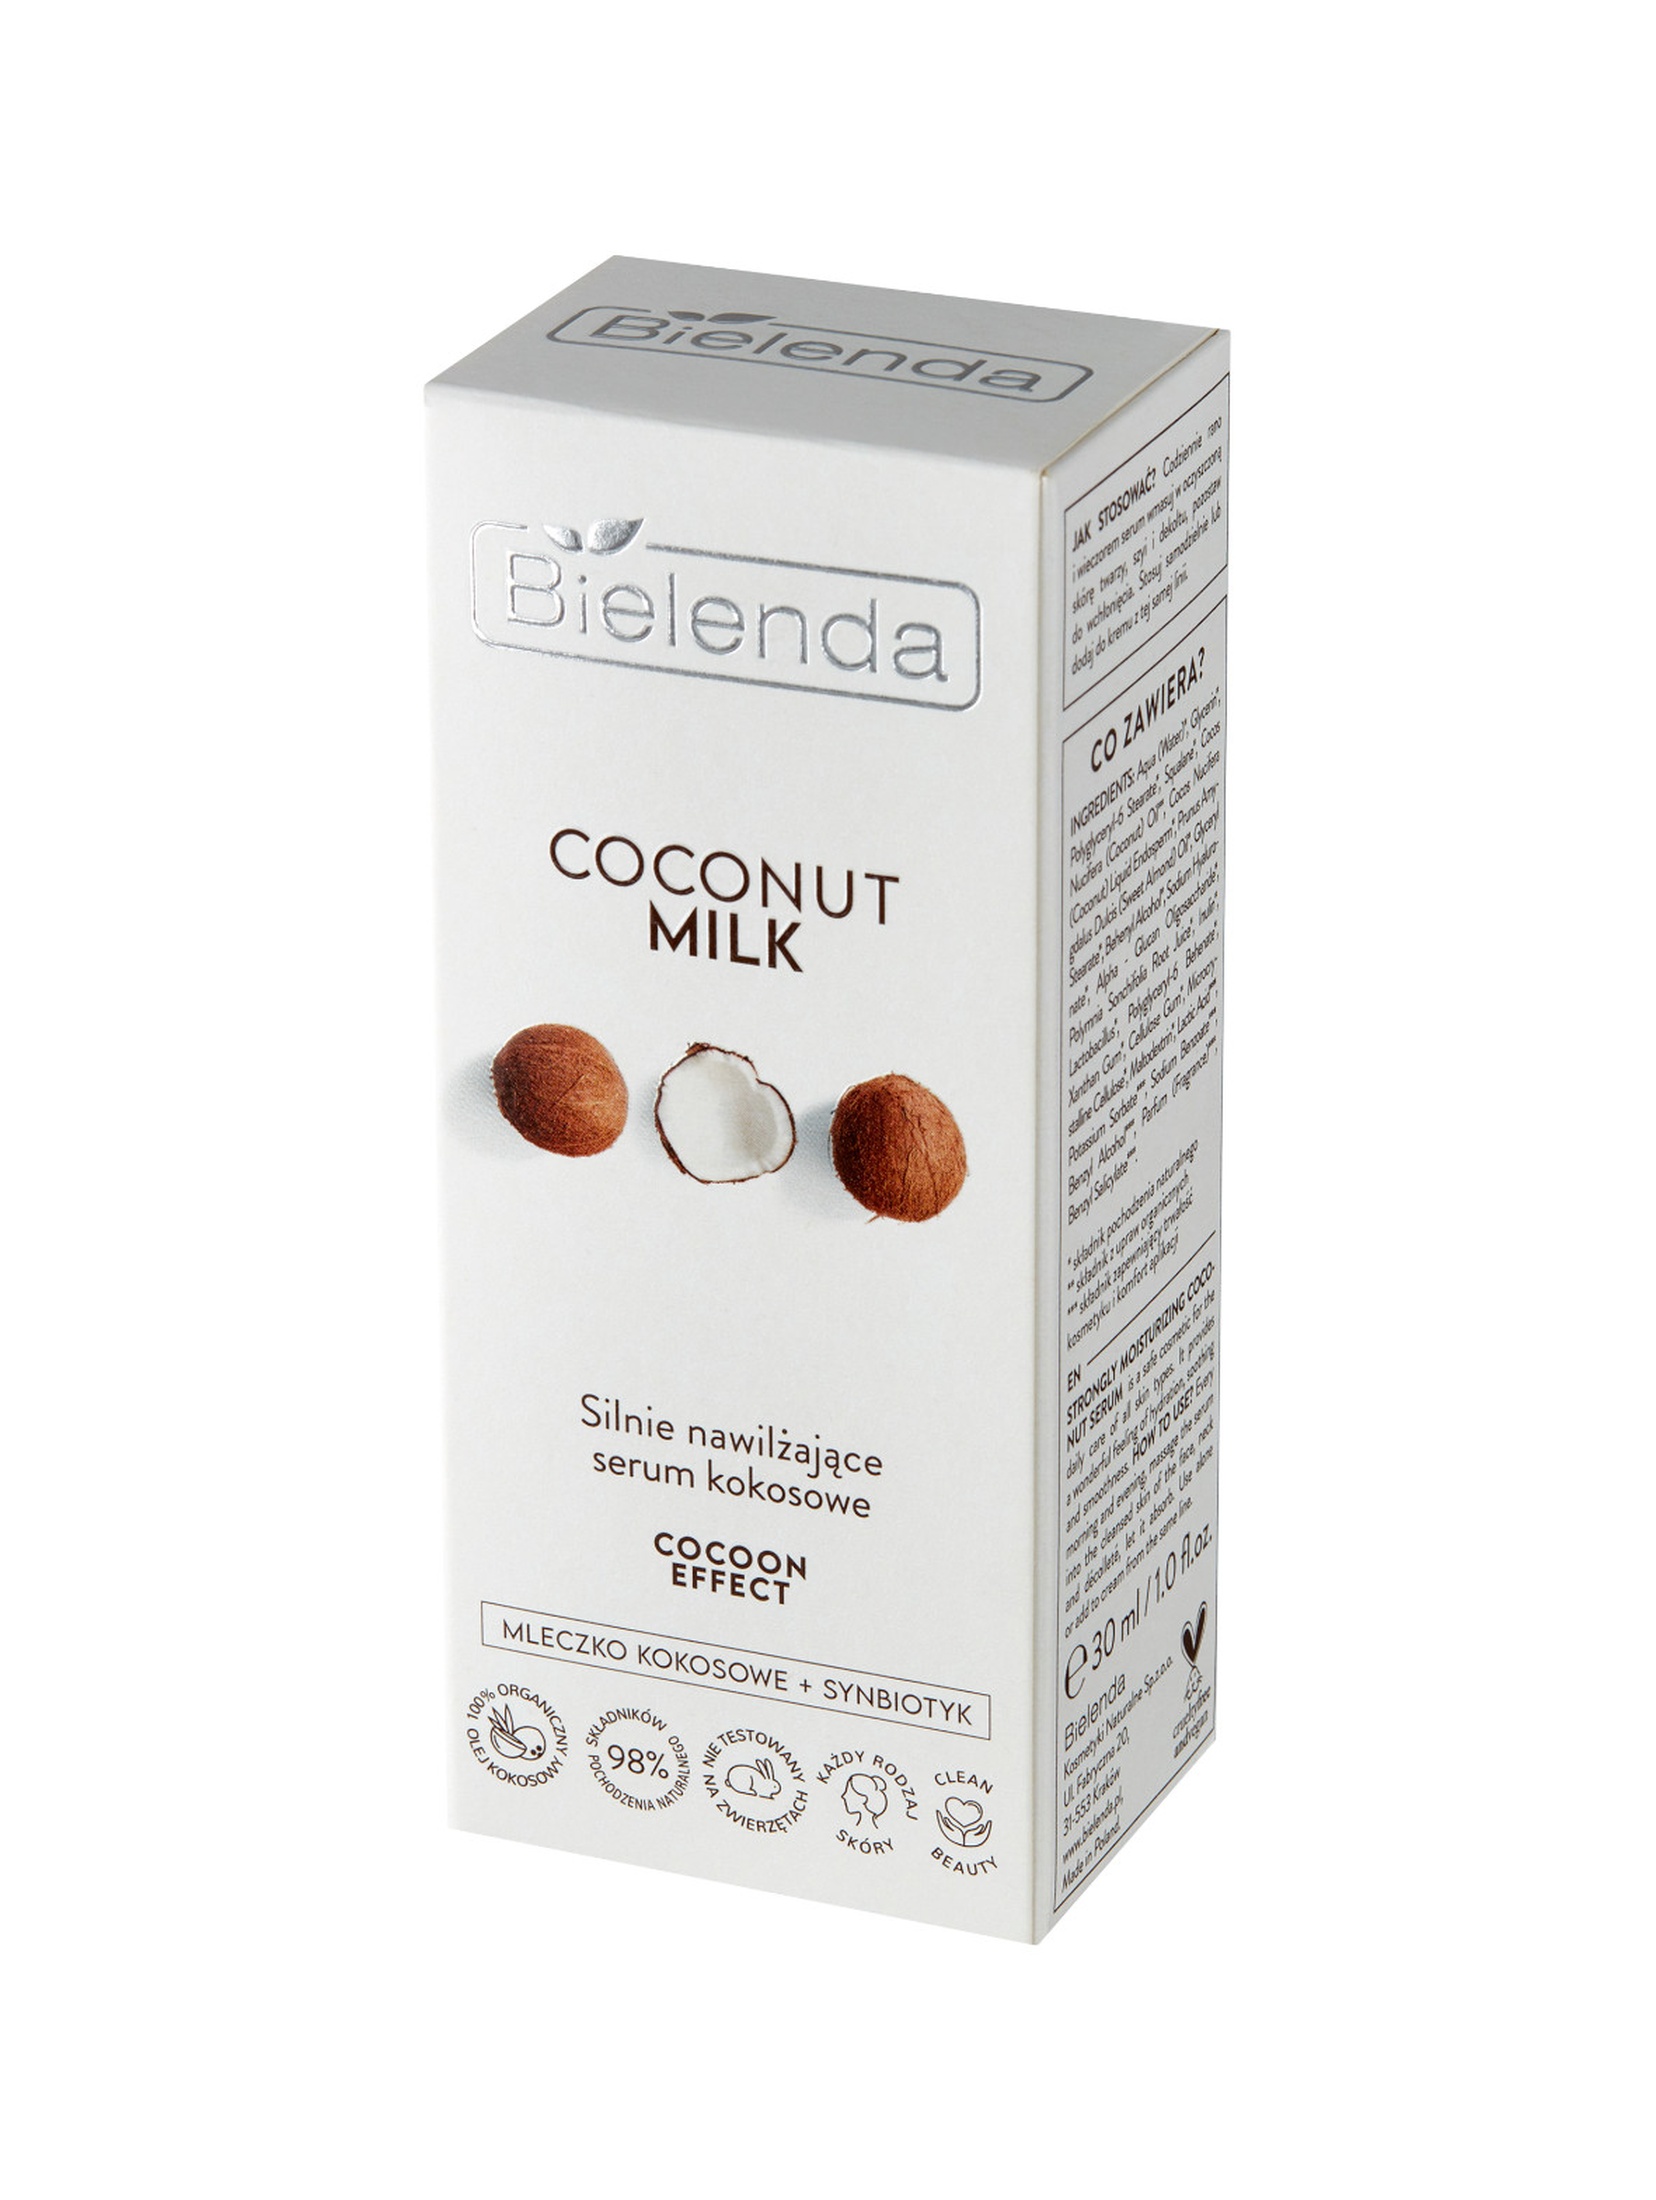 COCONUT MILK Silnie nawilżające serum kokosowe COCOON EFFECT, 30ml